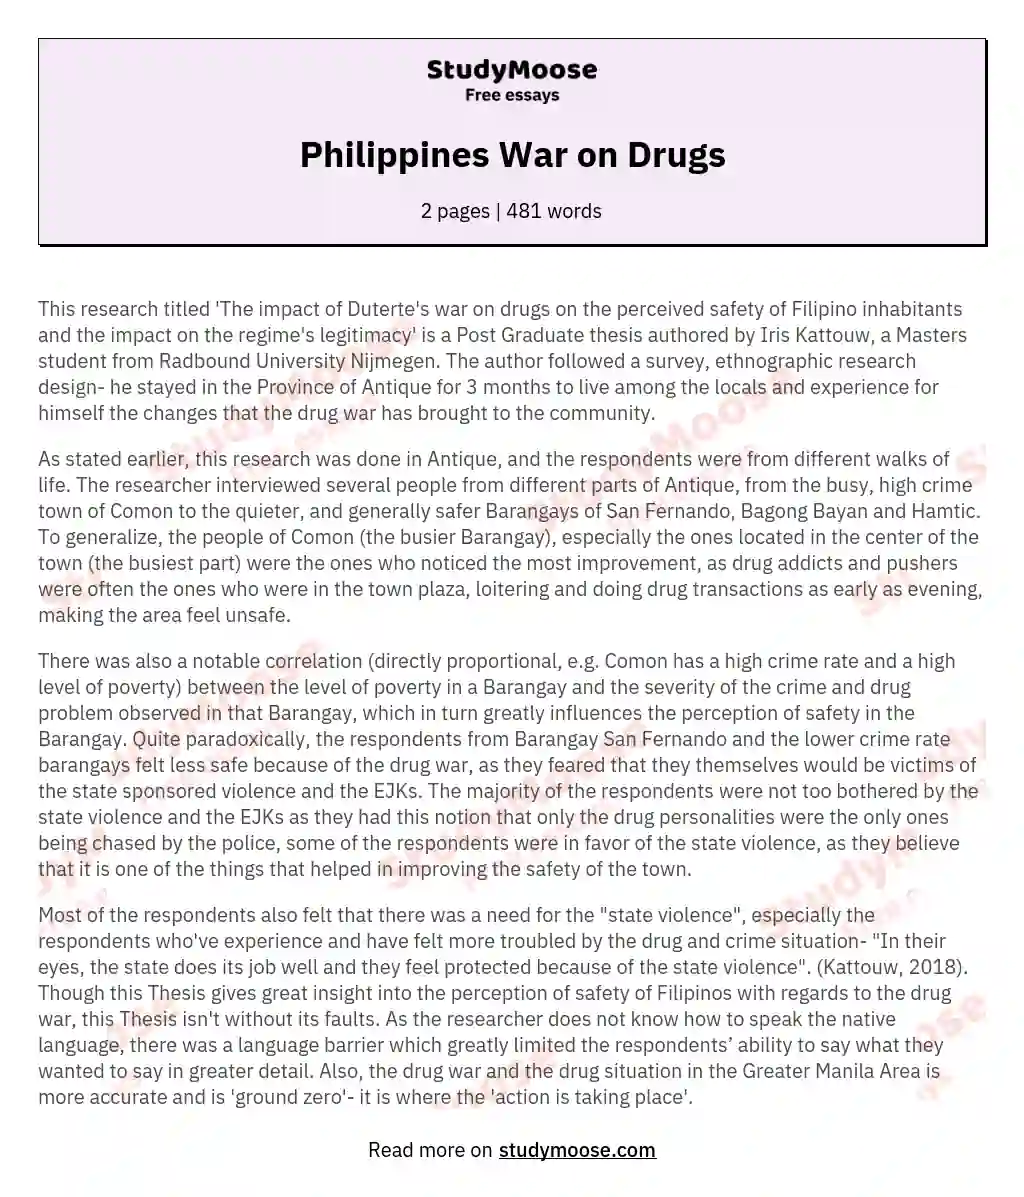 Philippines War on Drugs essay